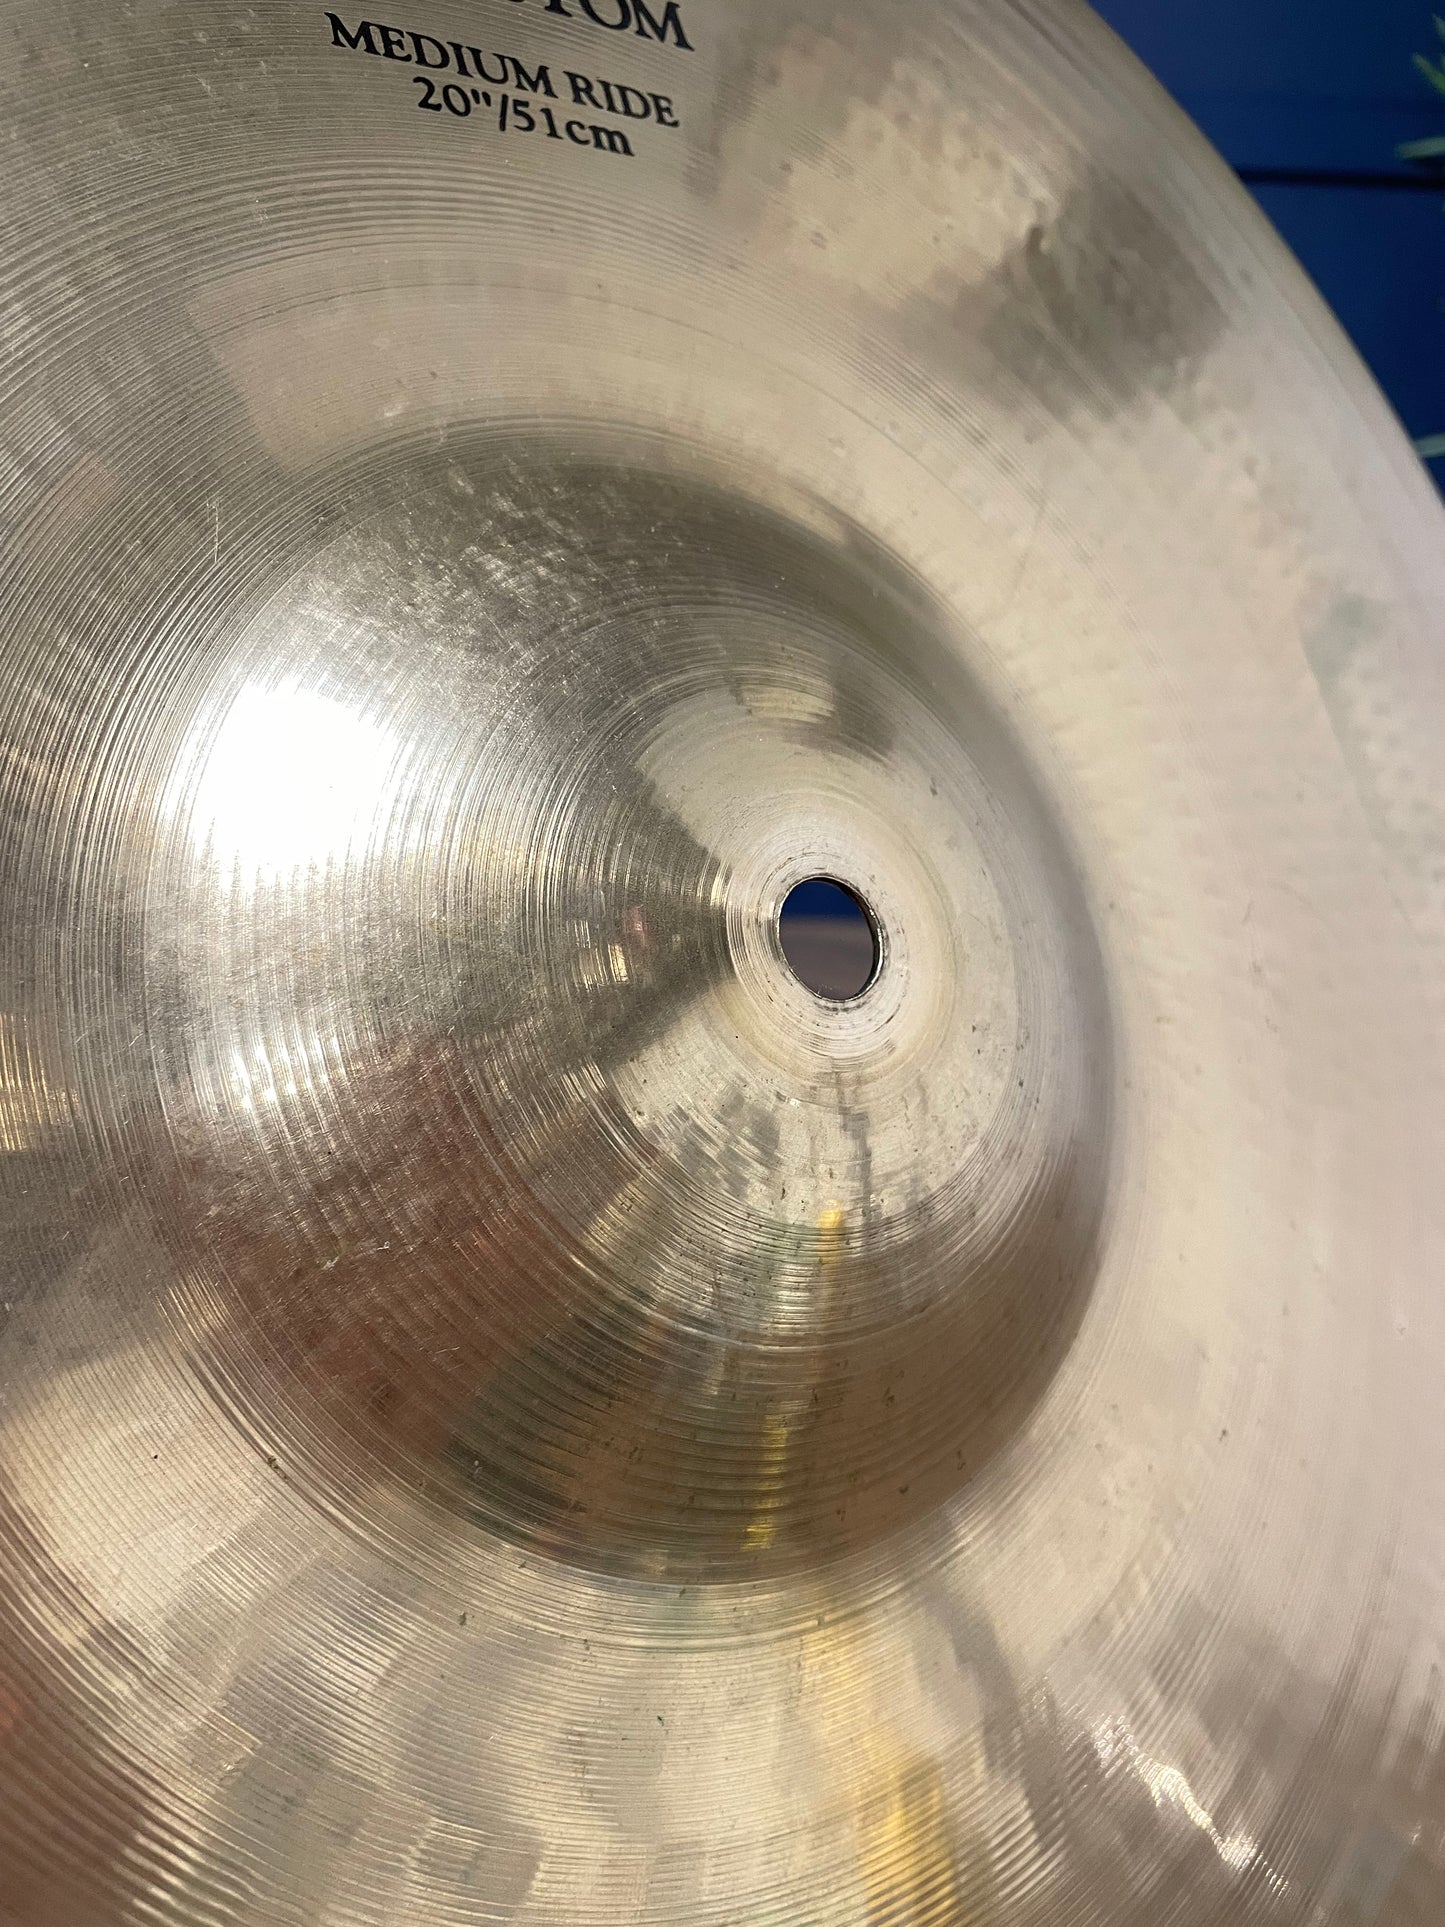 Zildjian A Custom Medium Ride Cymbal 20”/51cm / Drum Accessory #LE29